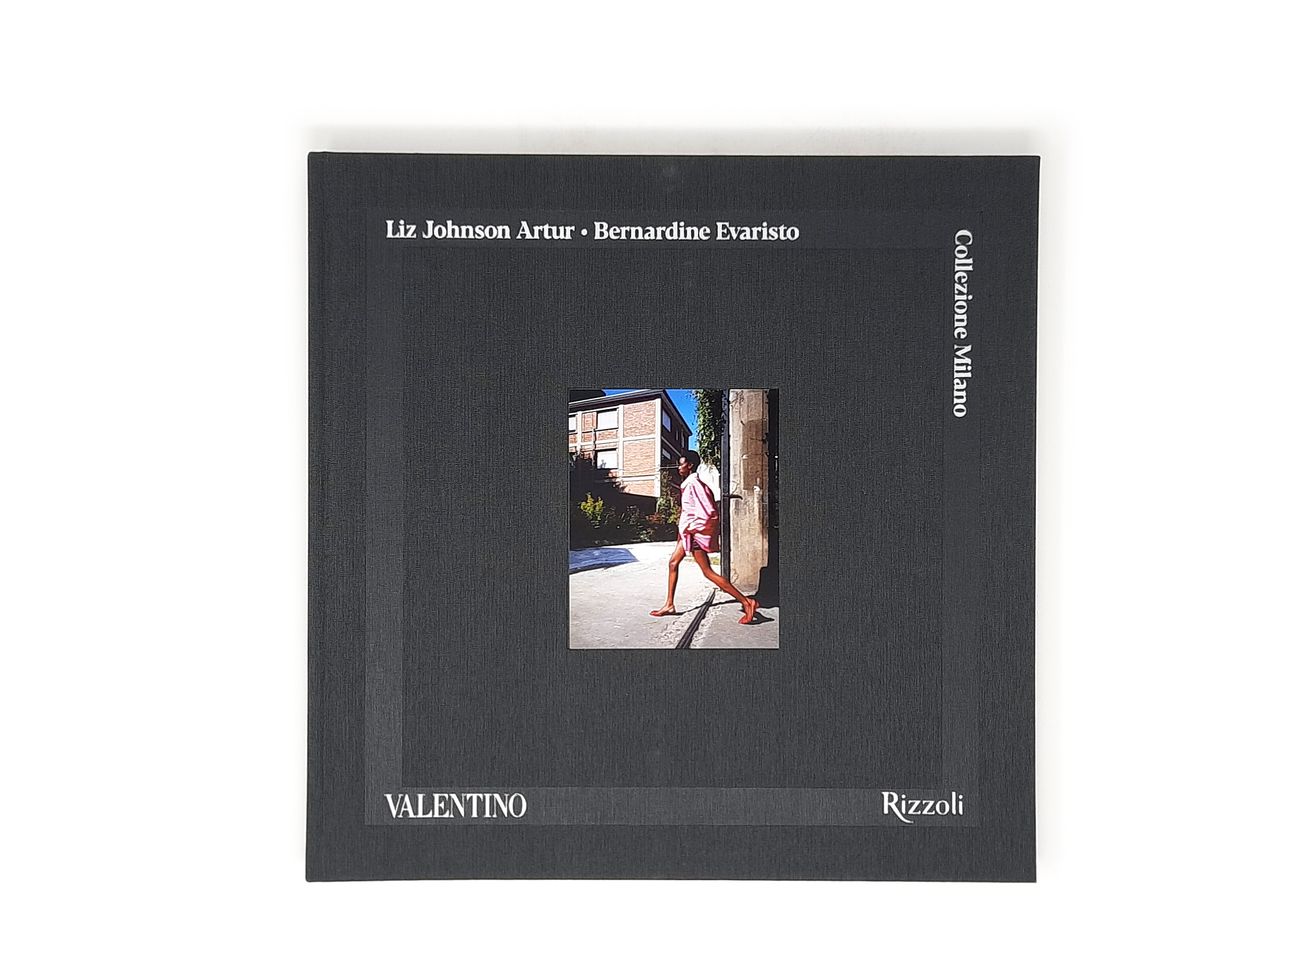 Liz Johnson Artur & Bernardine Evaristo – Valentino Collezione Milano (Rizzoli, Milano 2021)